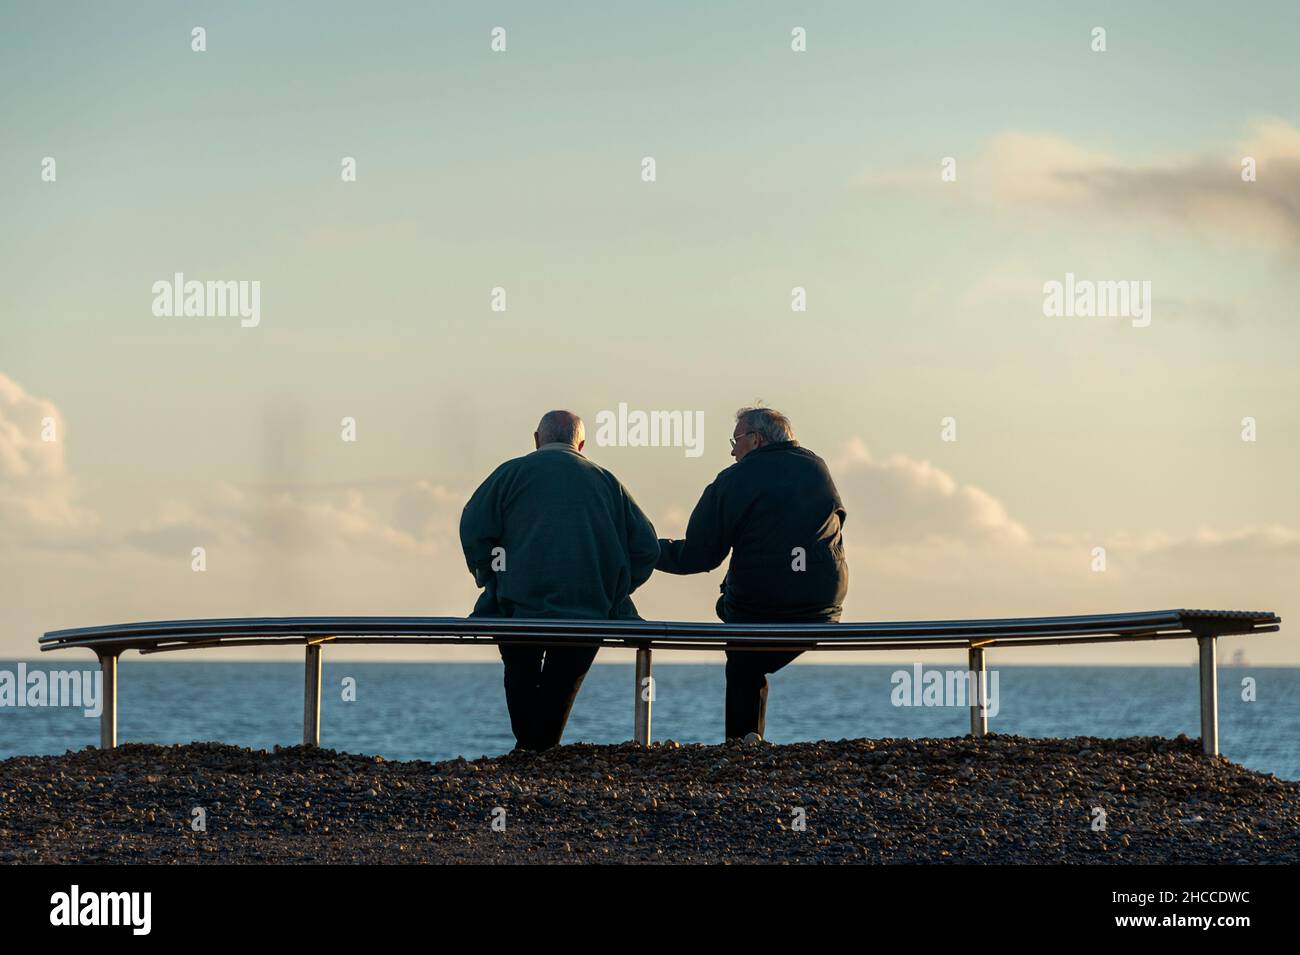 Vista trasera de dos ancianos sentados en un banco junto al mar hablando unos con otros. Foto de stock